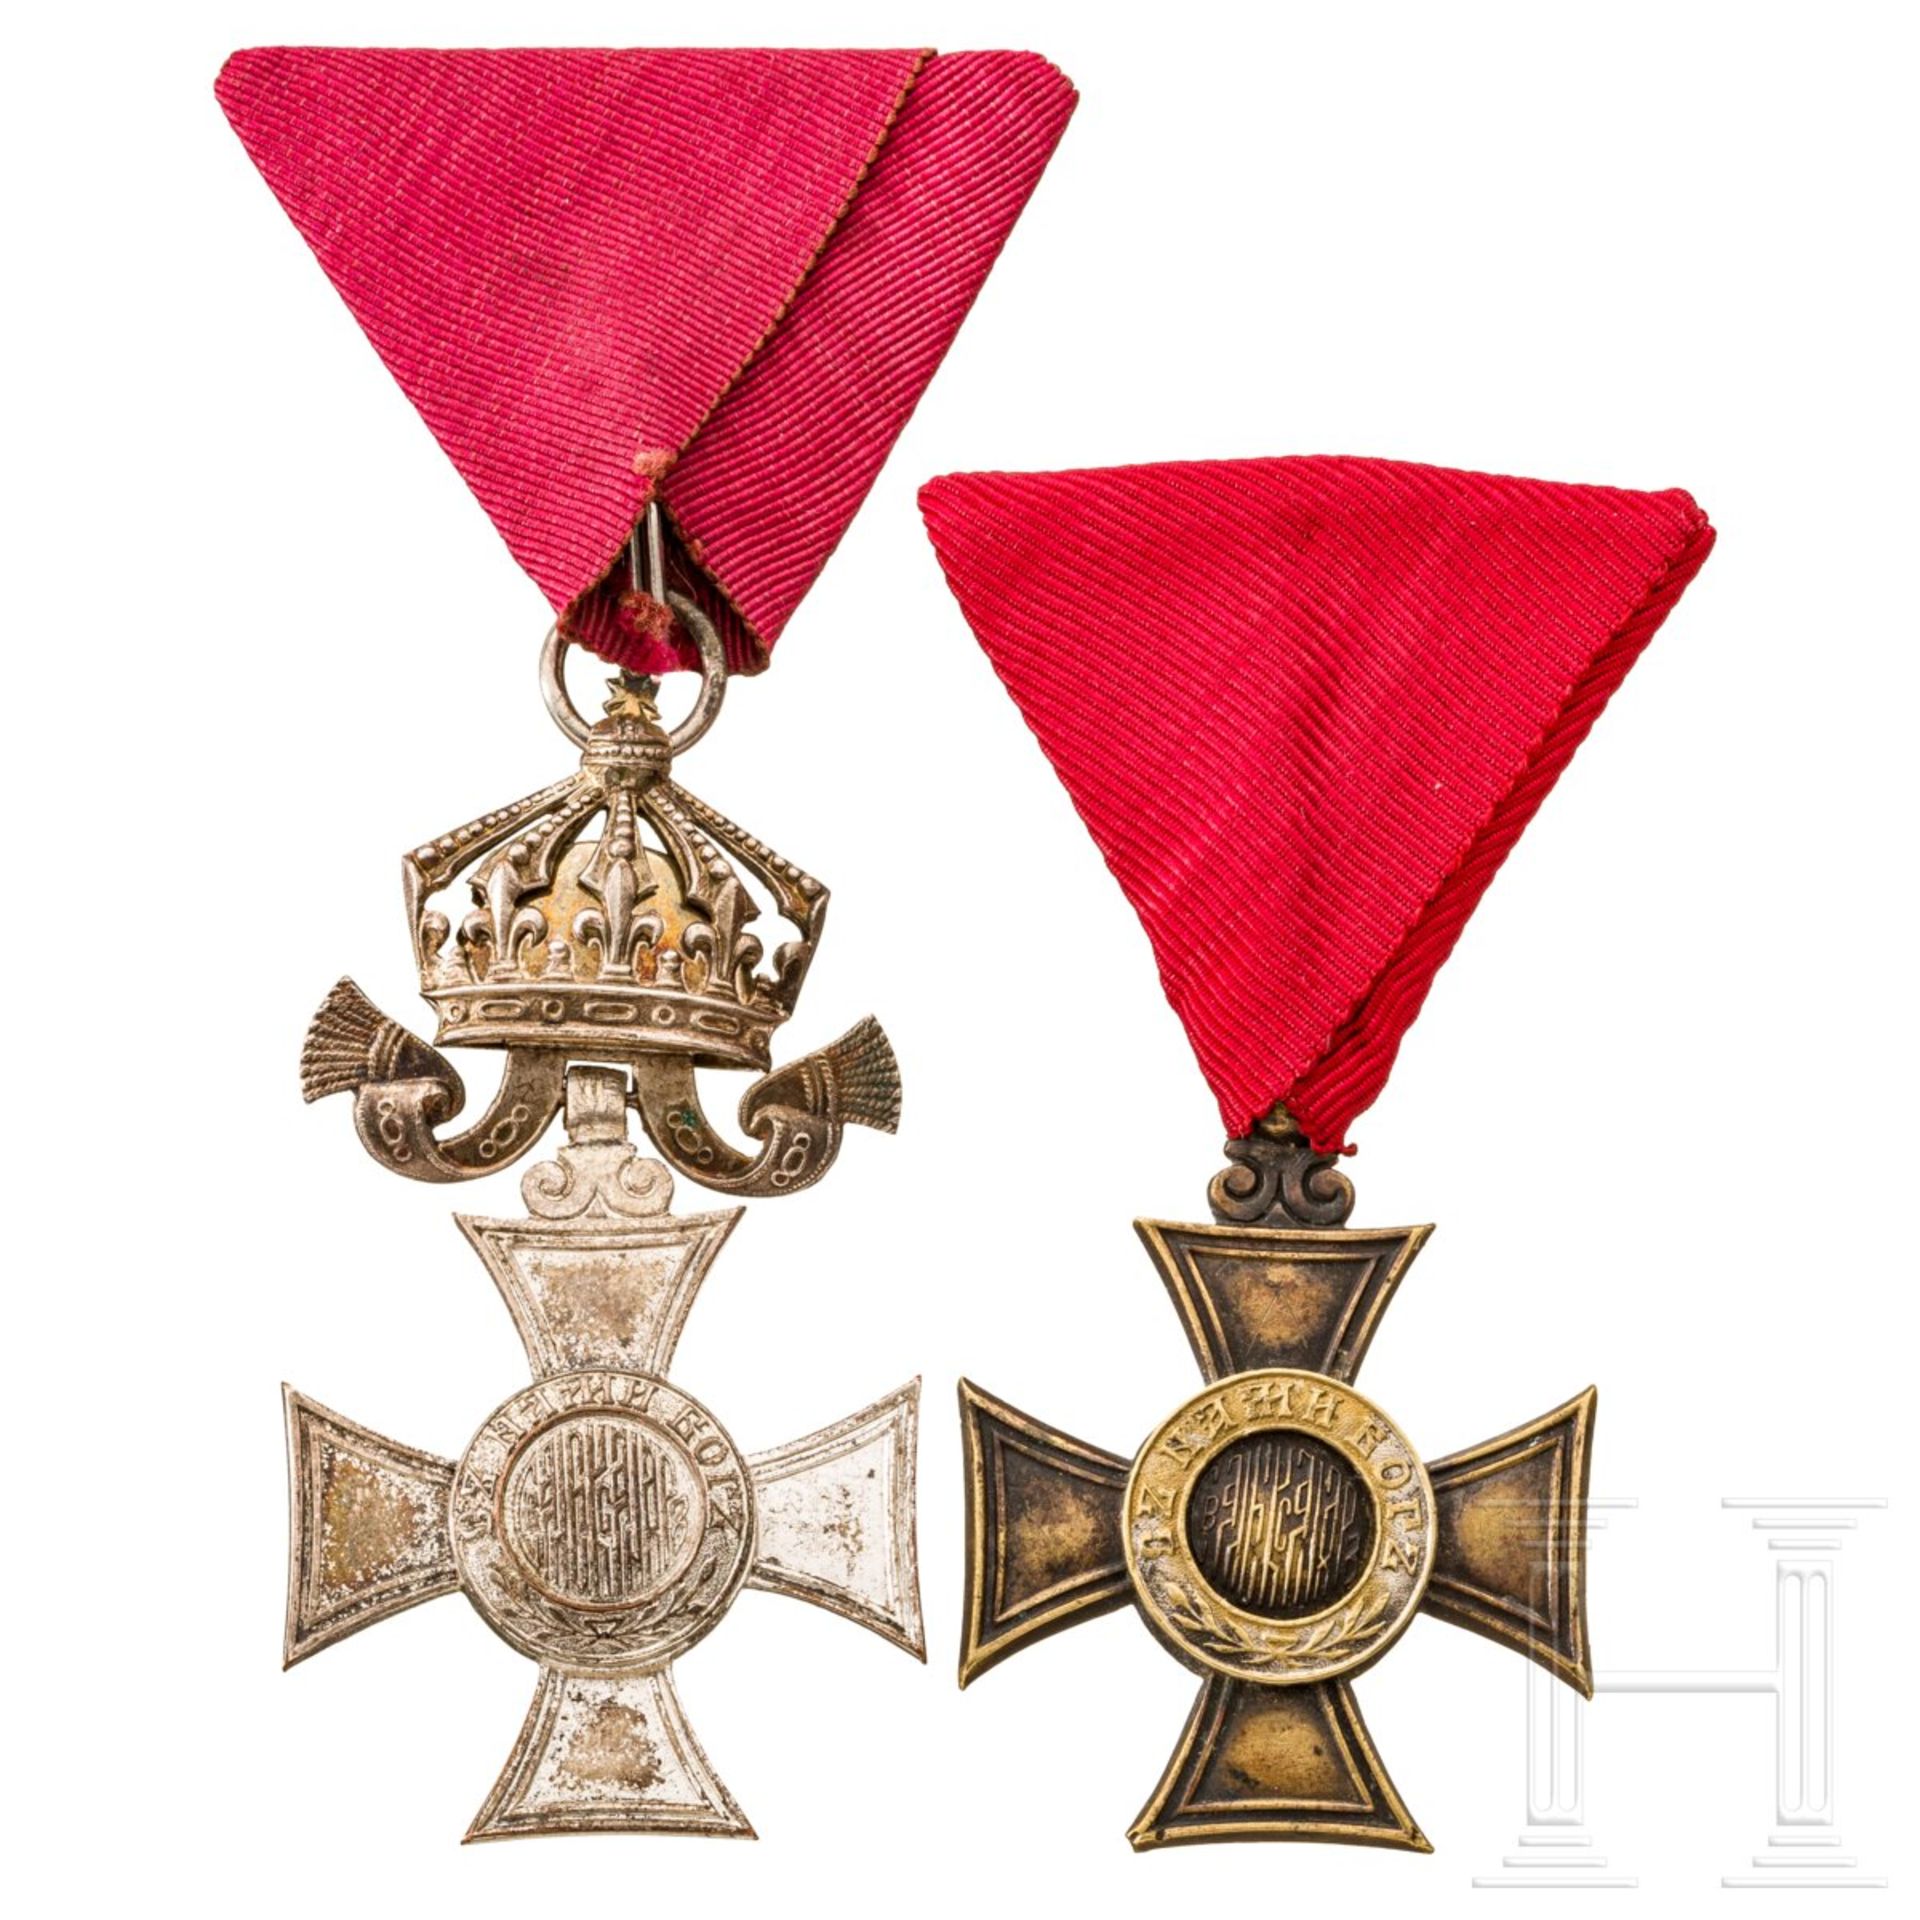 Zwei St.-Alexander-Orden 6. Klasse mit und ohne Krone